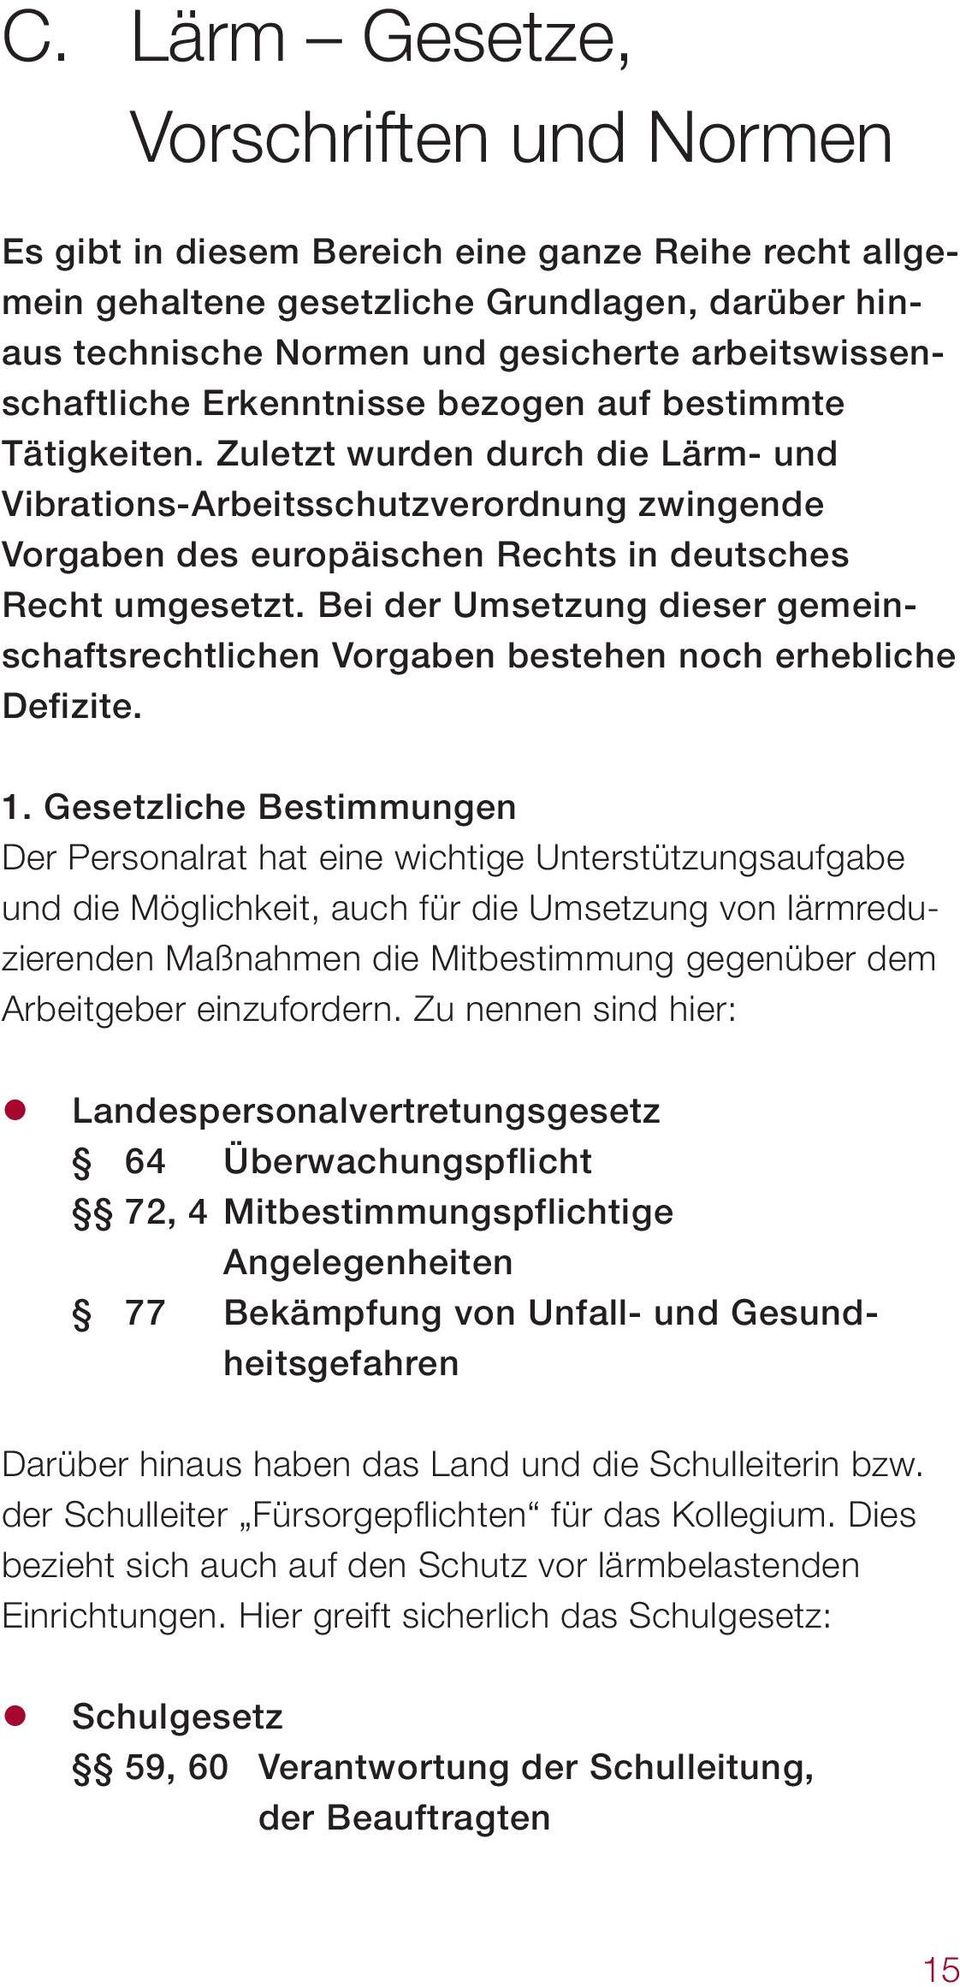 Zuletzt wurden durch die Lärm- und Vibrations-Arbeitsschutzverordnung zwingende Vorgaben des europäischen Rechts in deutsches Recht umgesetzt.